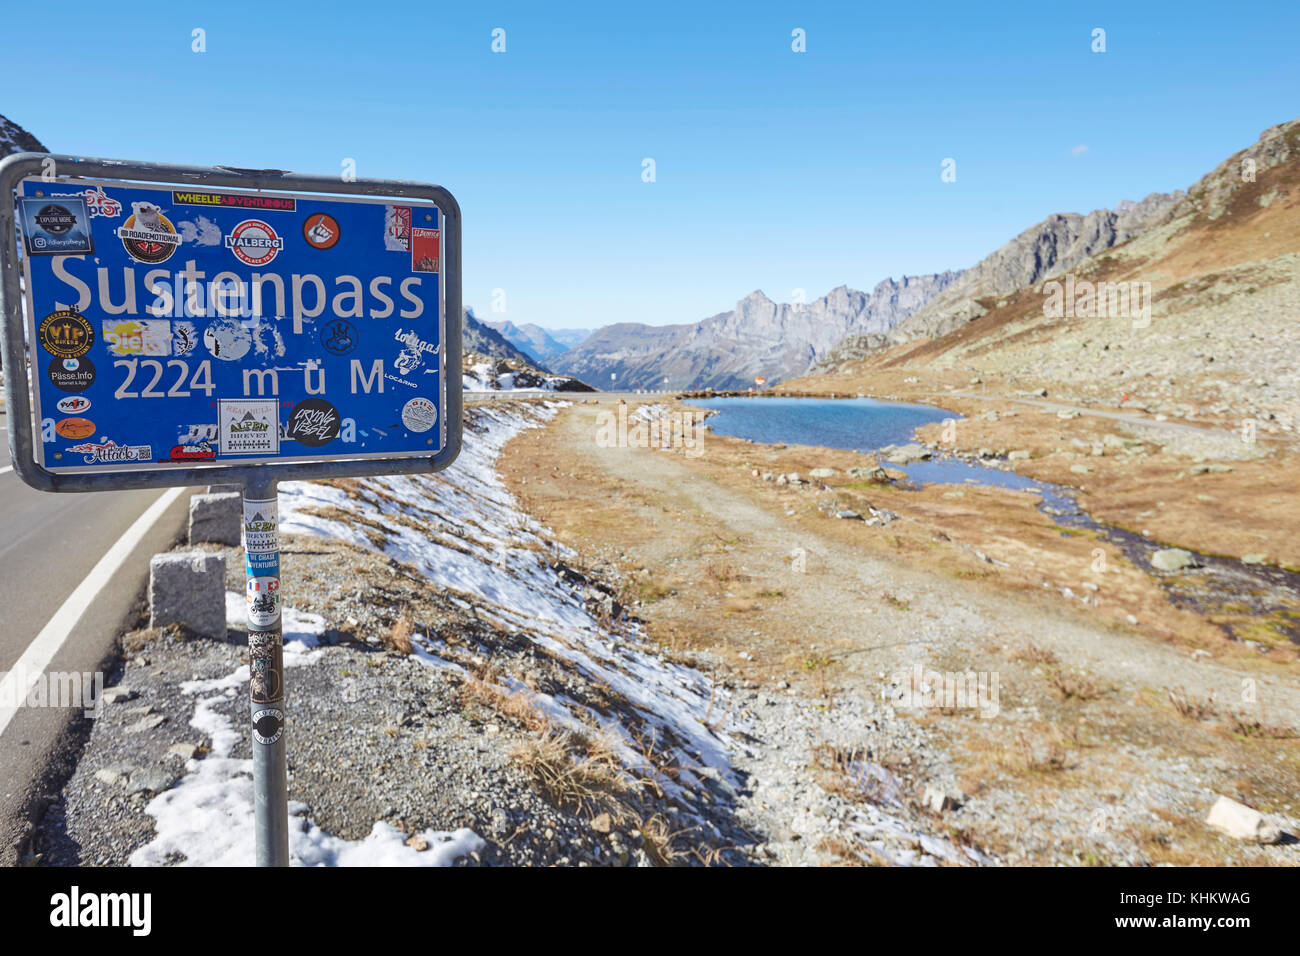 Enseigne sur le Sustenpass, 2224m, Susten Pass, Swiss Alps, Suisse. Banque D'Images